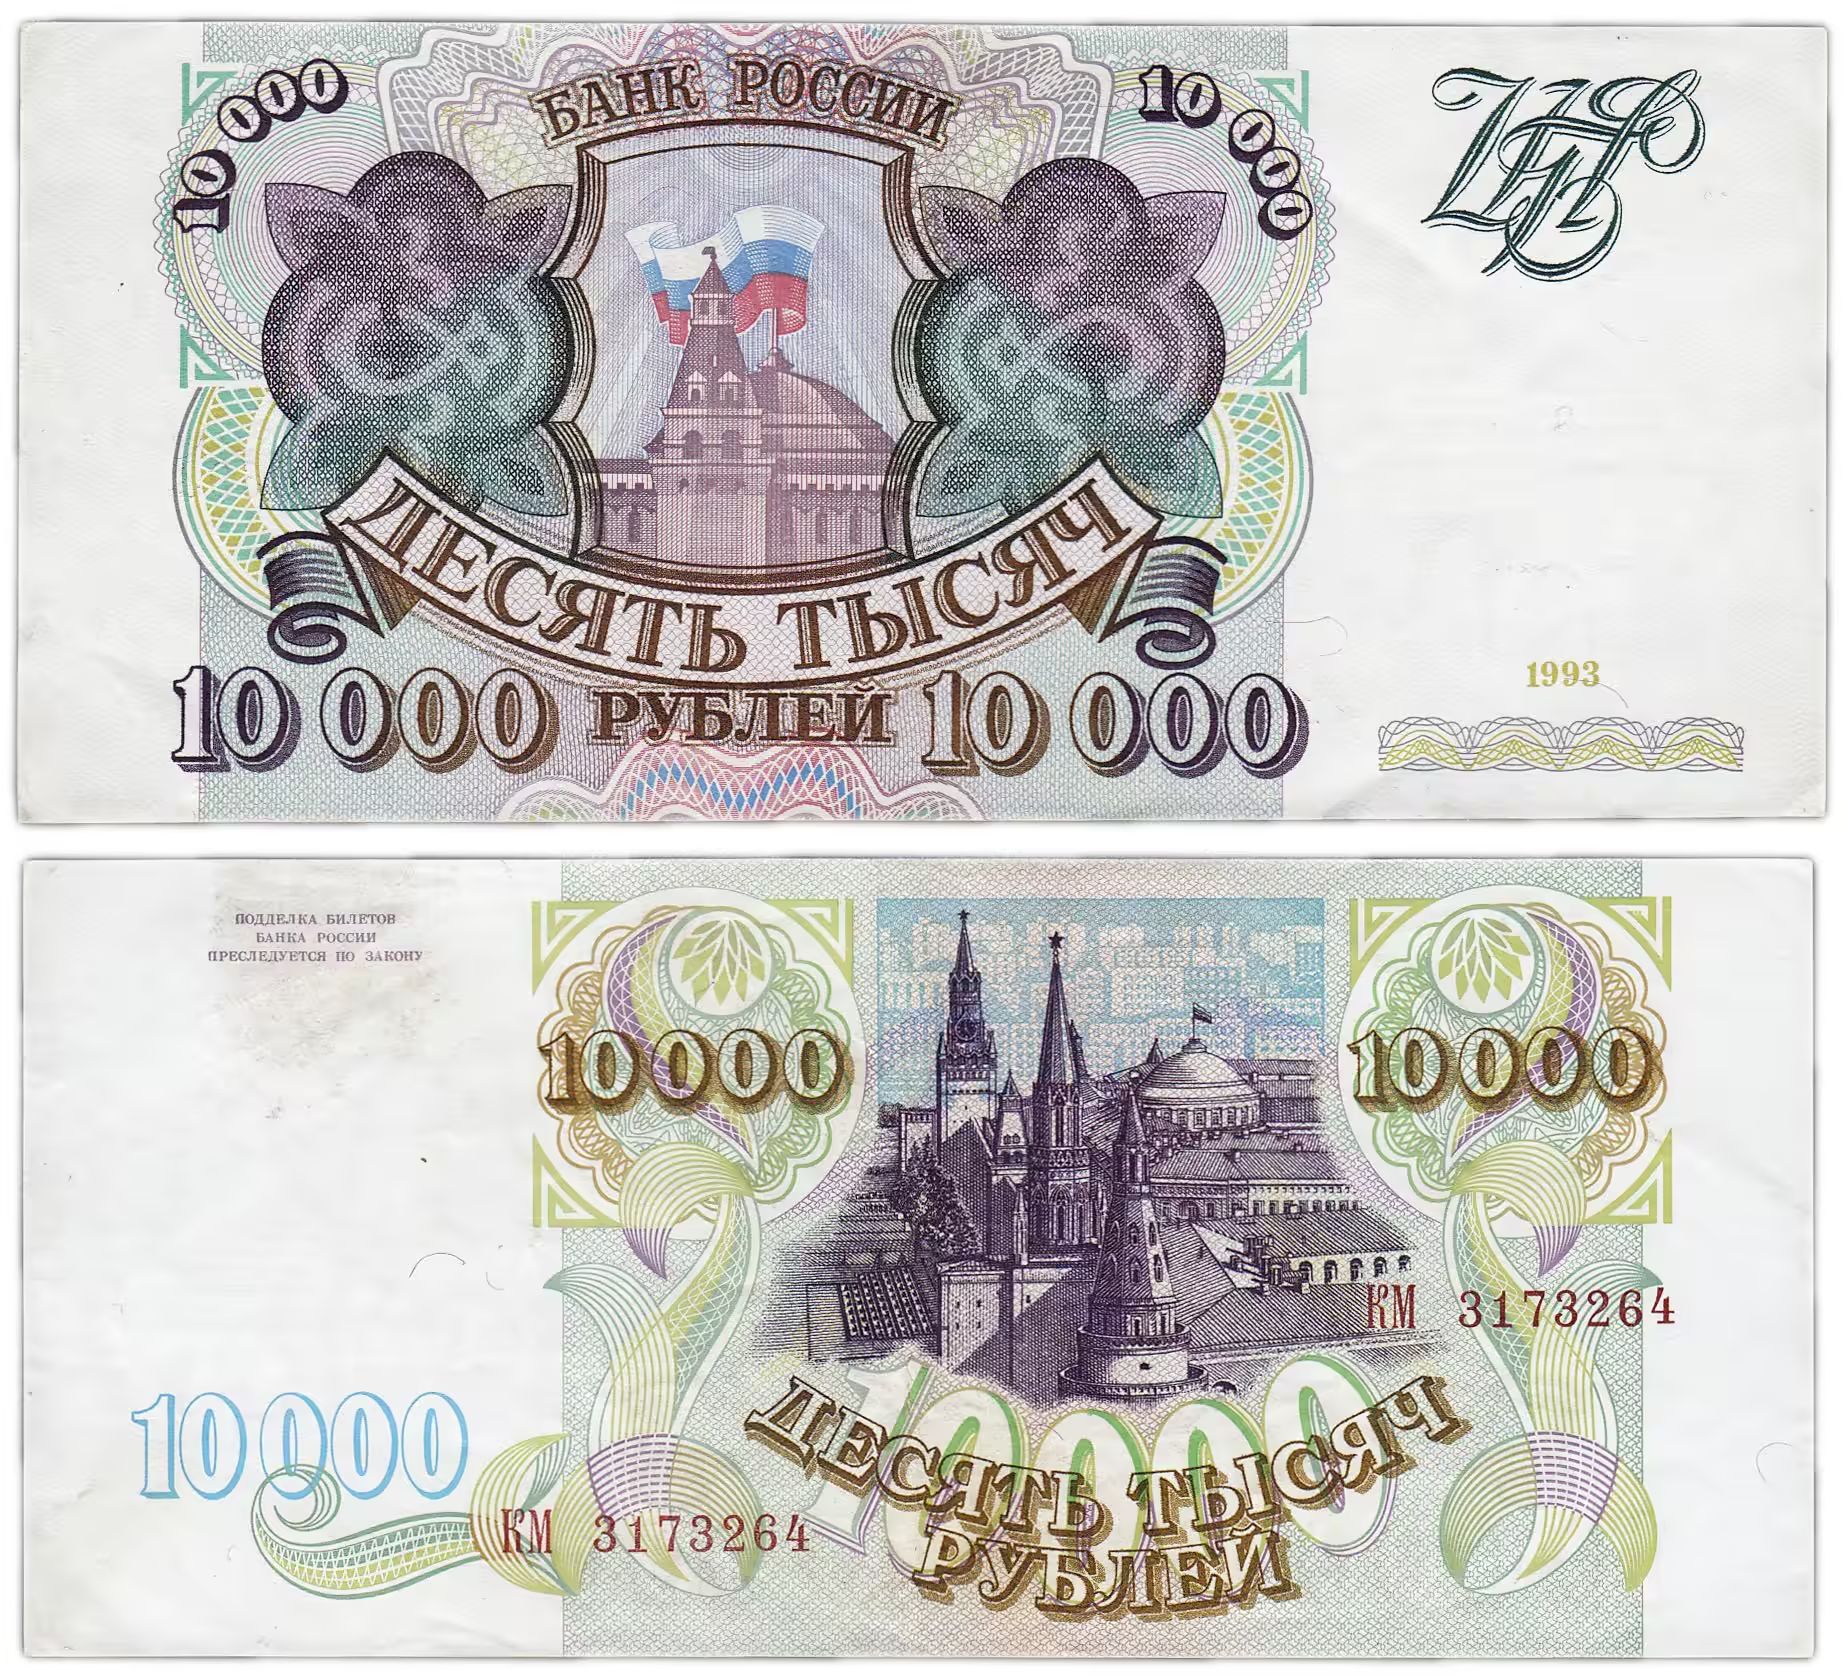 1 000 рублей россия рублей. Банкнота 10000 рублей 1993 года. Купюра 10000 рублей. Банкноты 10 000 рублей. Купюра 10 0000 рублей.